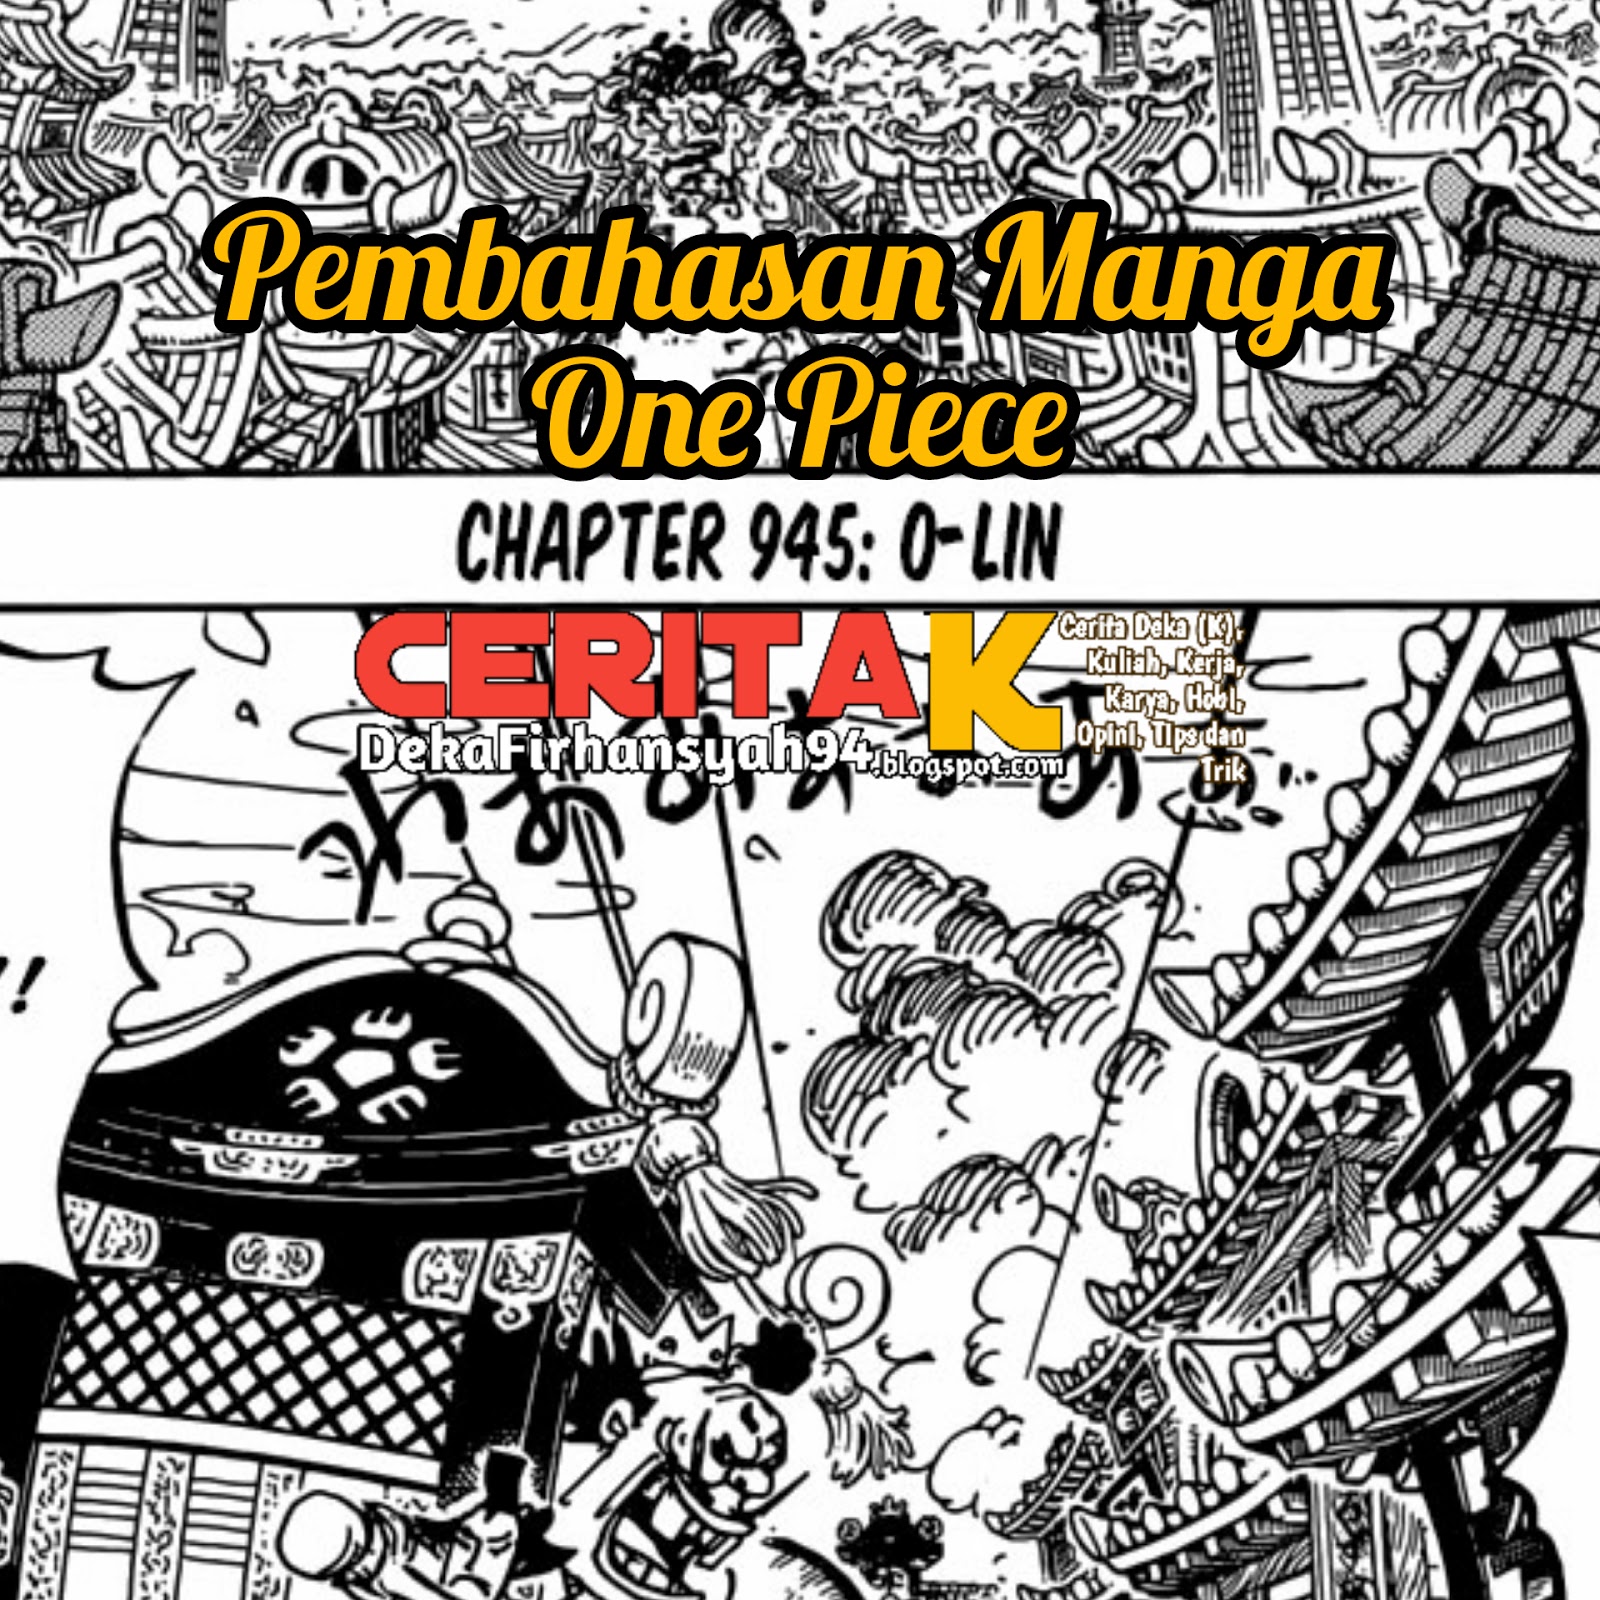 Pembahasan Manga One Piece Chapter 945 Ceritak Cerita Deka K